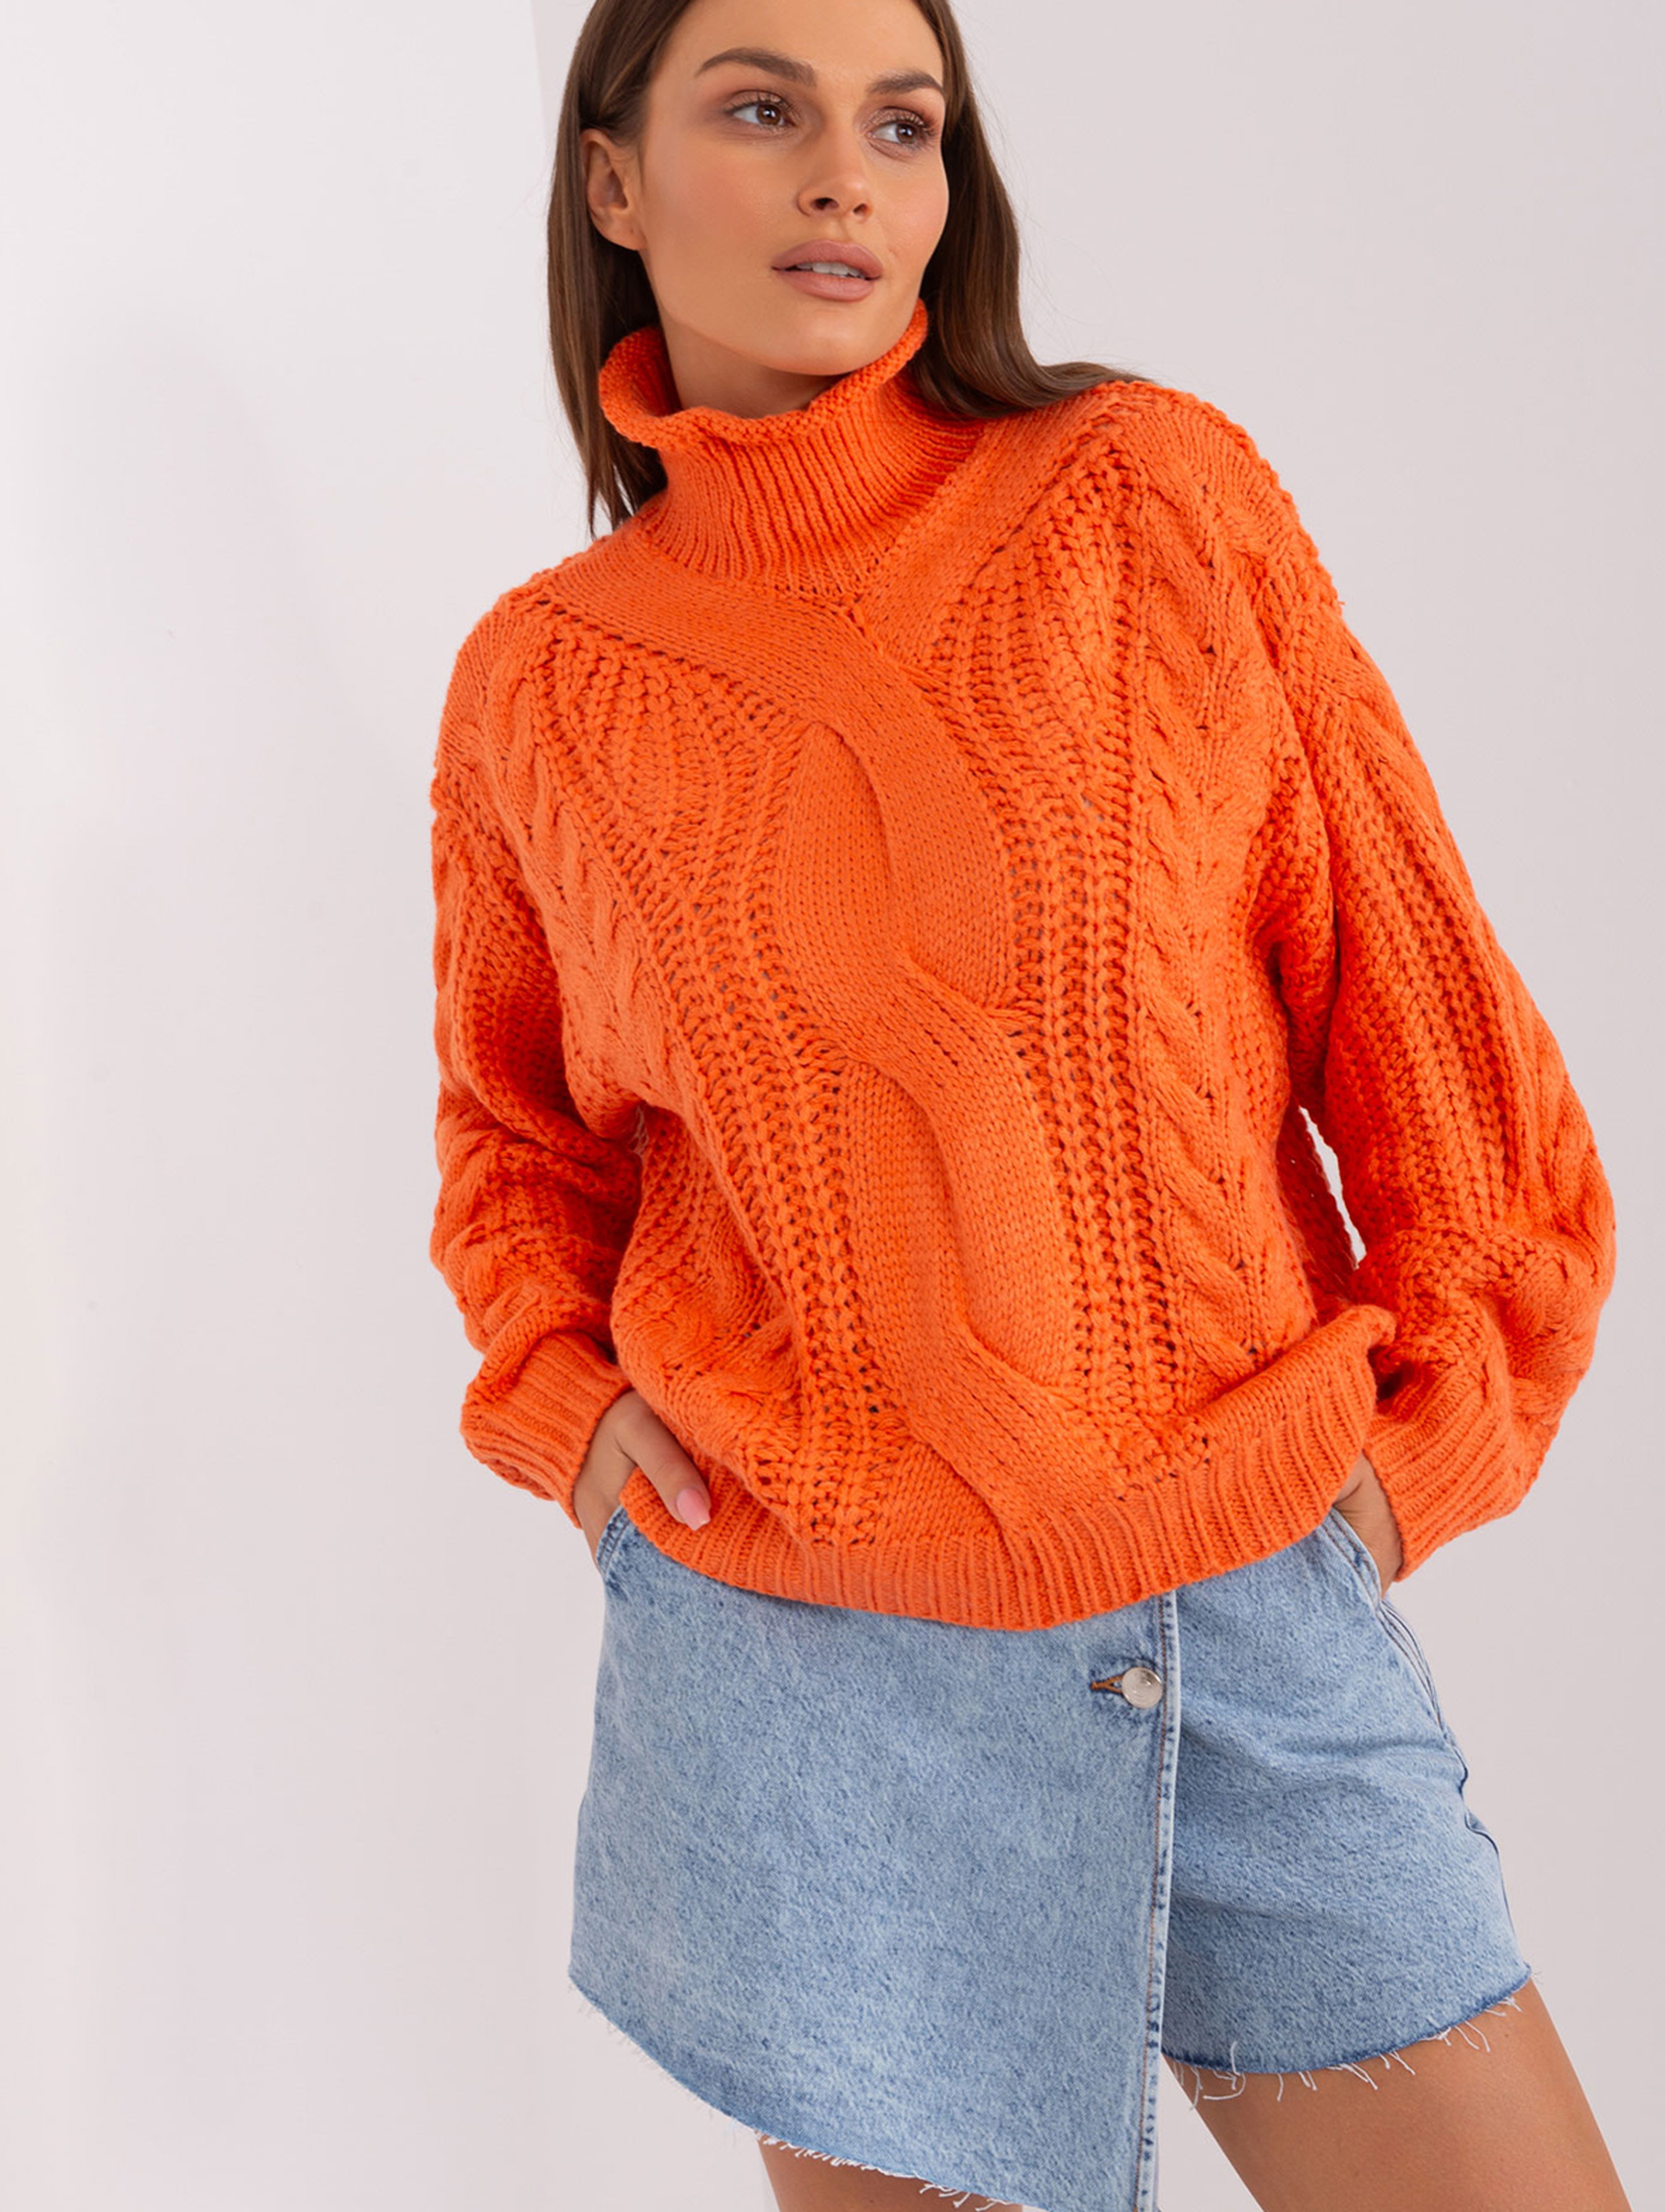 Pomarańczowy sweter oversize z warkoczami